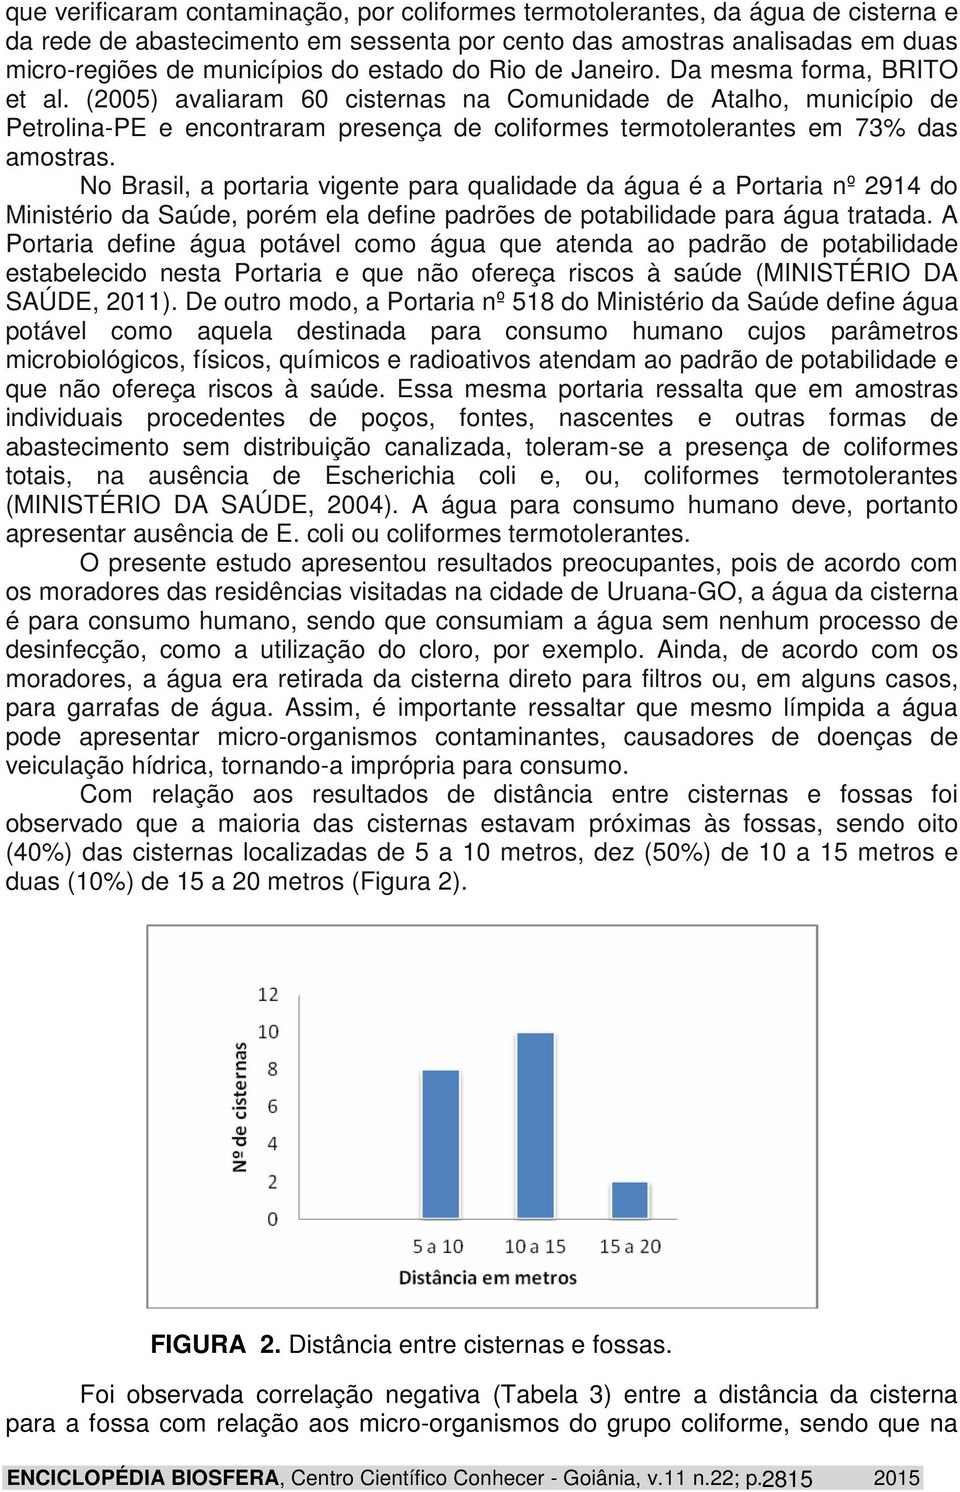 (2005) avaliaram 60 cisternas na Comunidade de Atalho, município de Petrolina-PE e encontraram presença de coliformes termotolerantes em 73% das amostras.